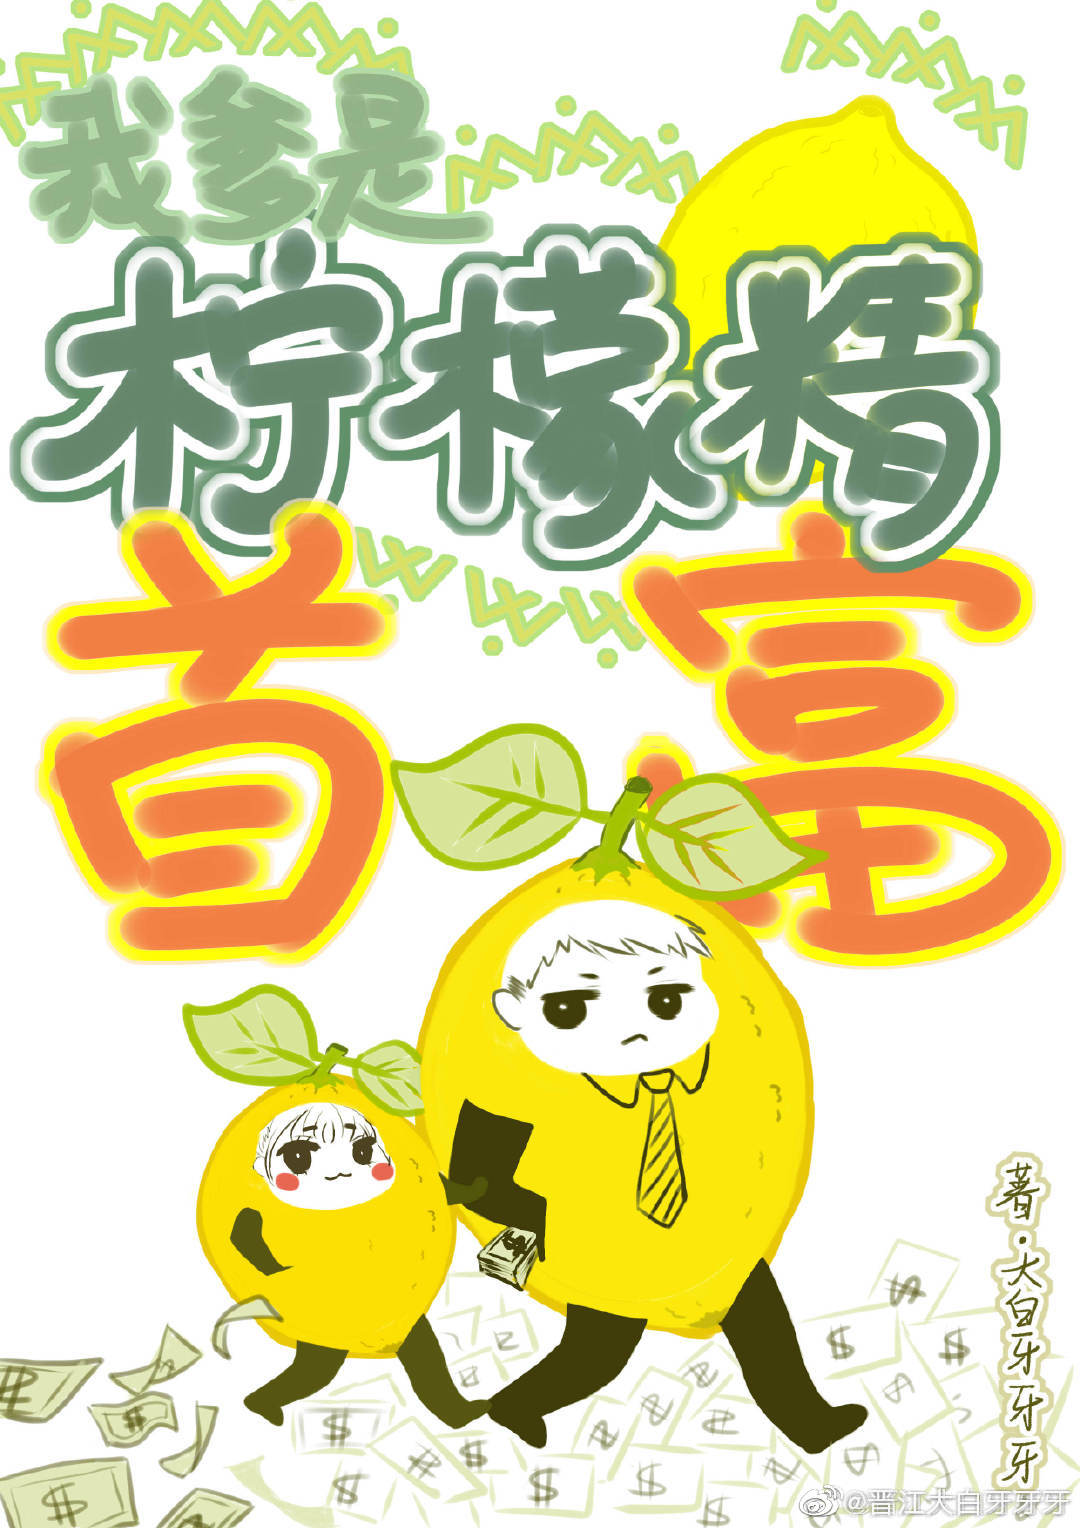 [小说]晋江VIP2020-07-21完结 总书评数：43638当前被收藏数：79283 宁檬穿成一只柠檬精_真千金是柠檬精